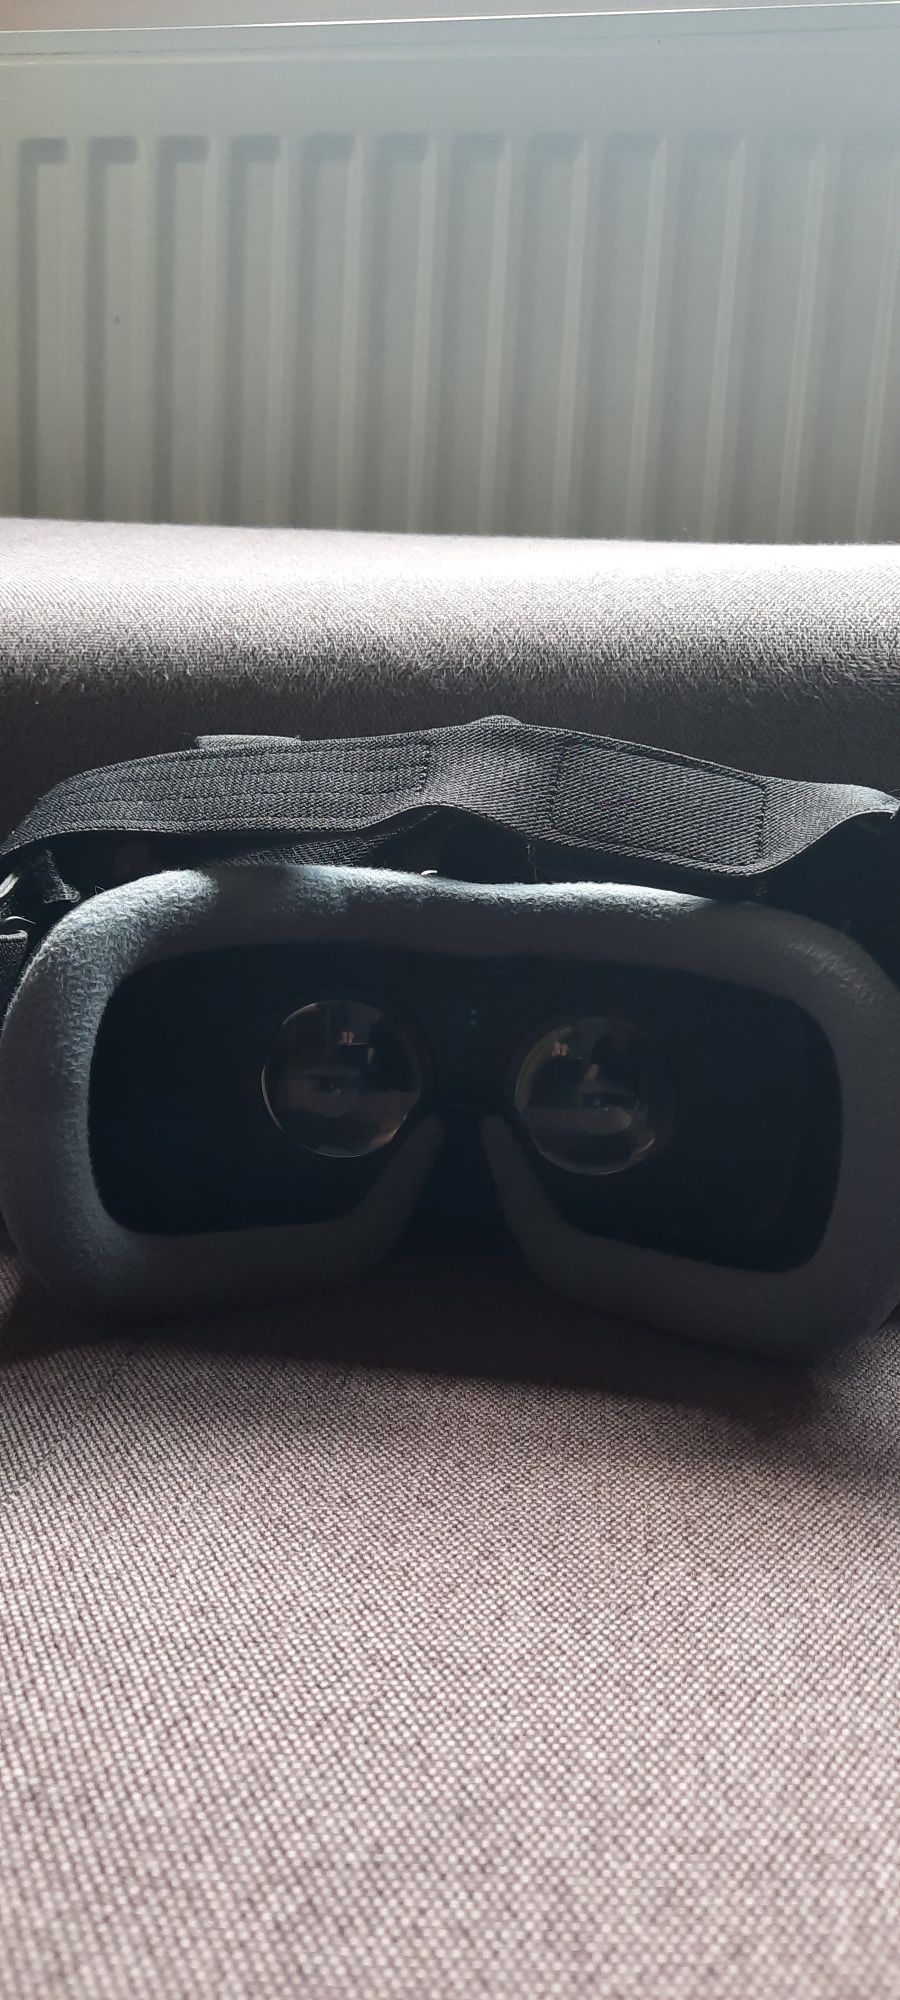 Vând ochelari Vr Samsung Oculus